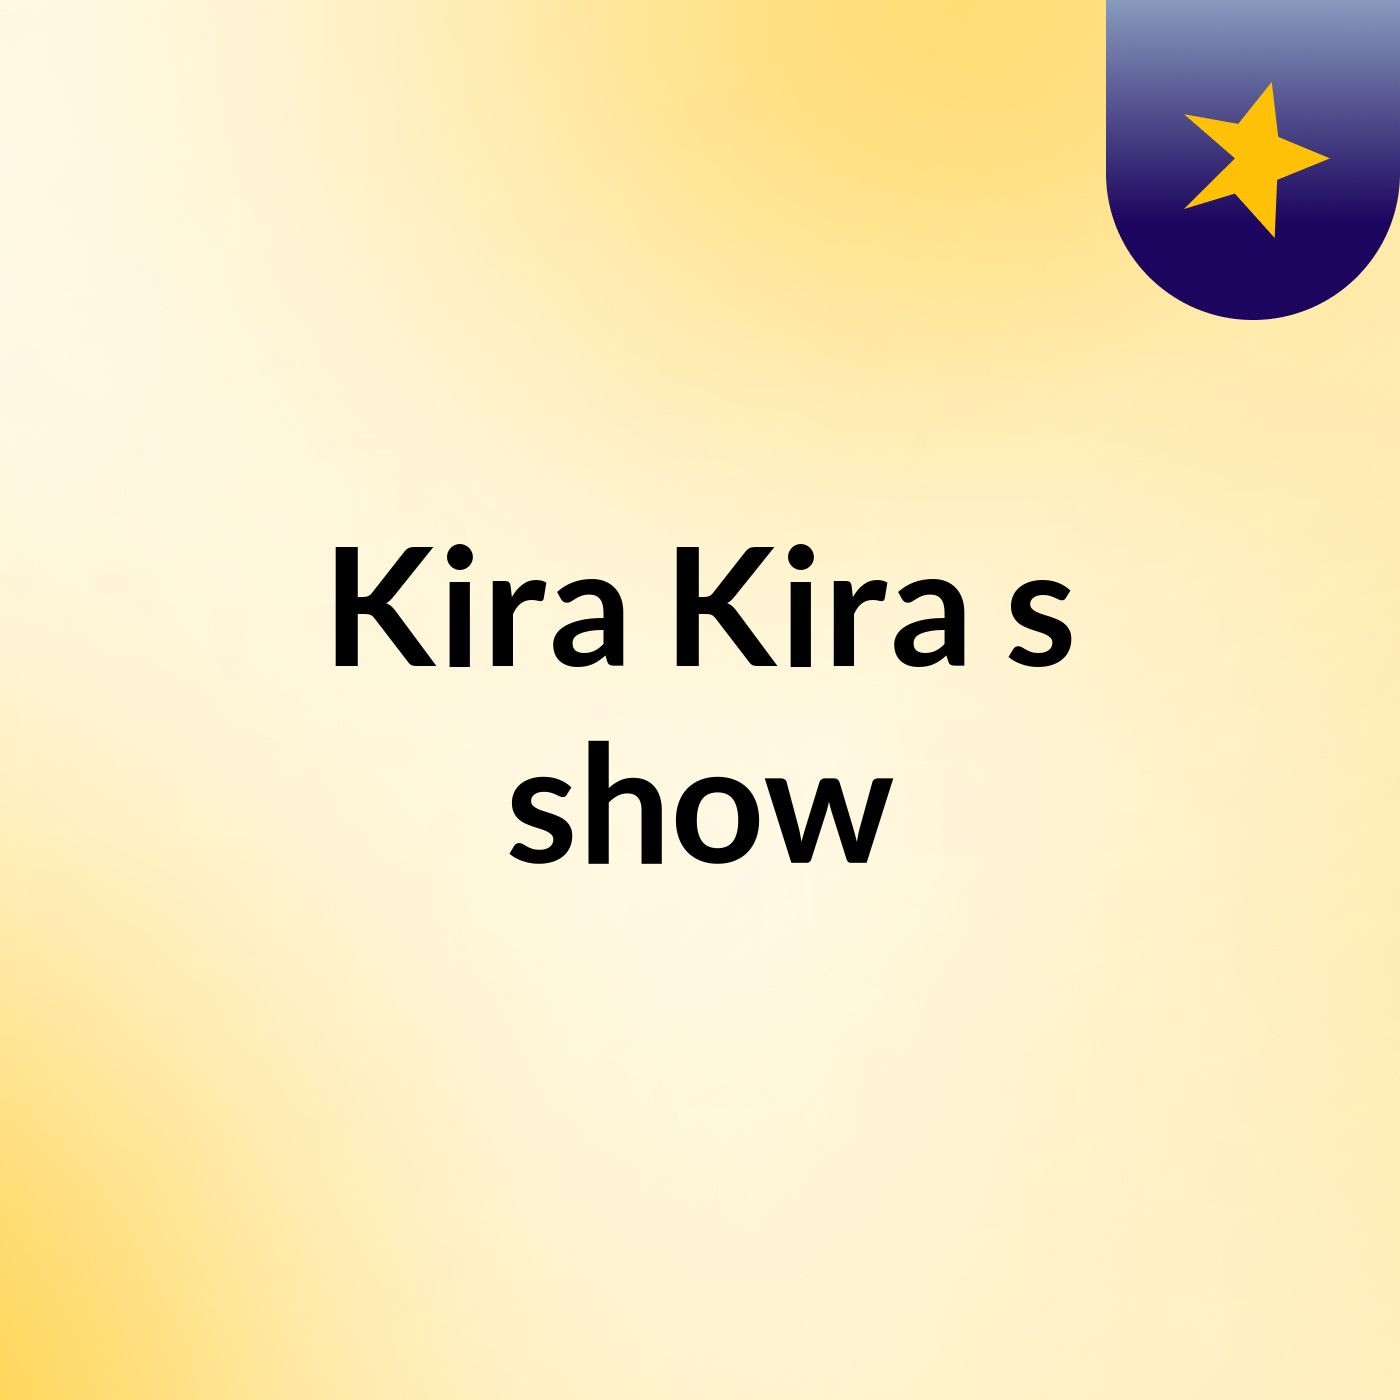 Kira Kira's show